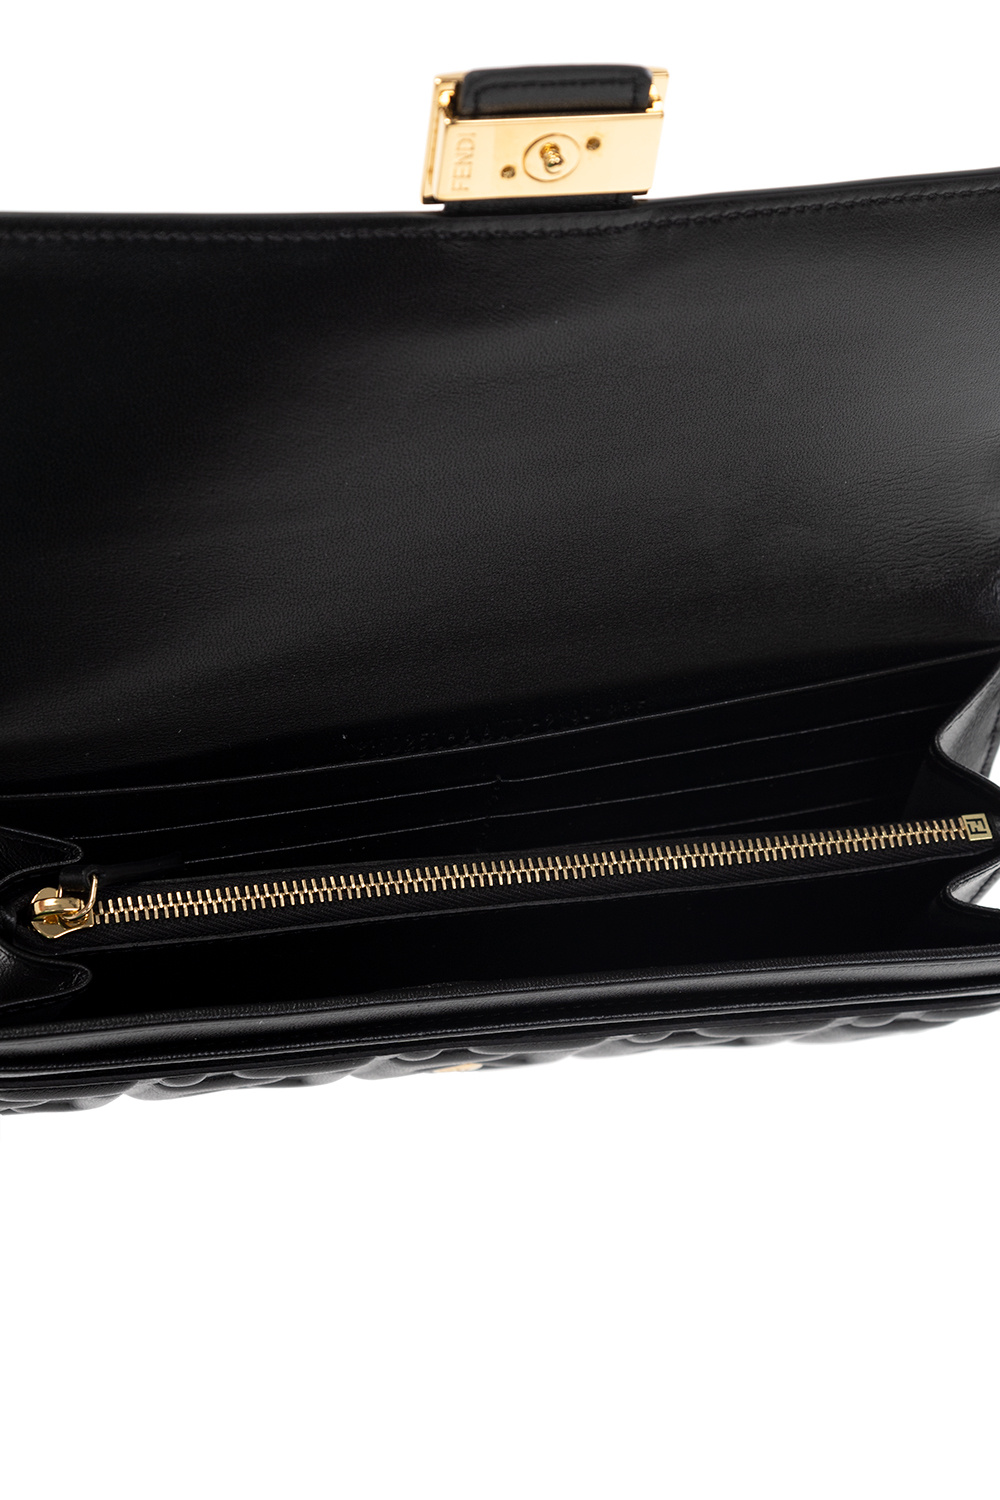 Fendi ‘Continental Baguette’ leather wallet